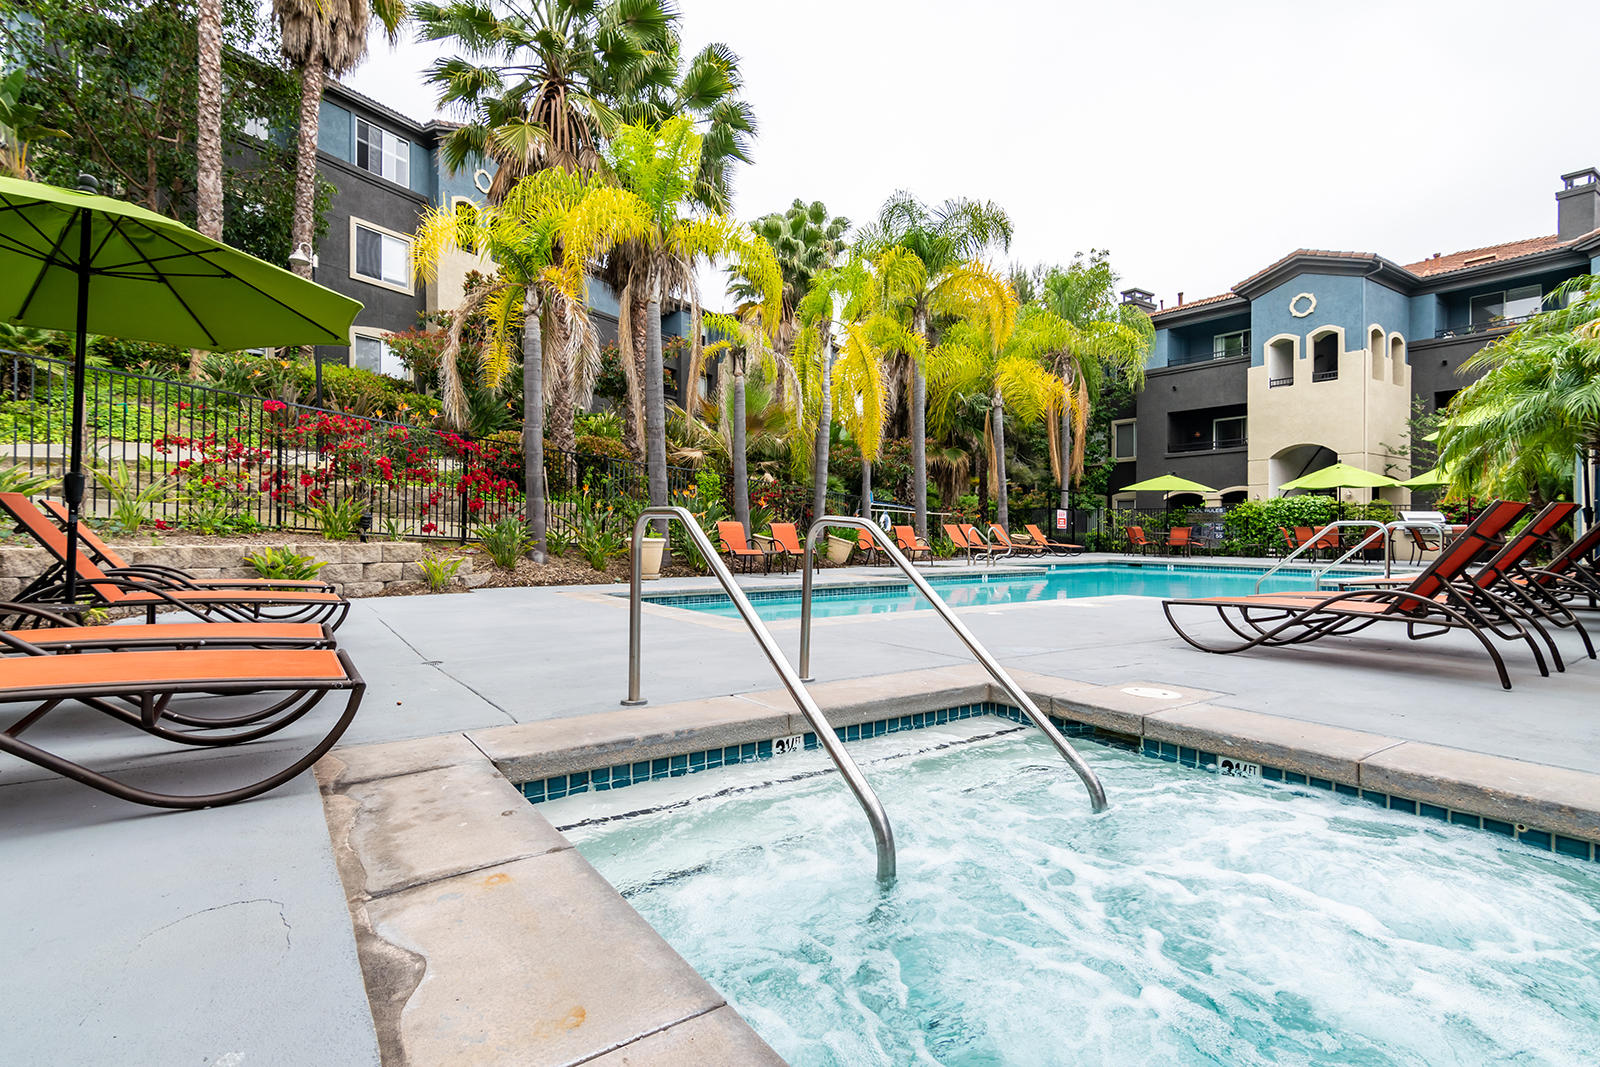 Capella at Rancho Del Oro Luxury Apartment Homes Photo